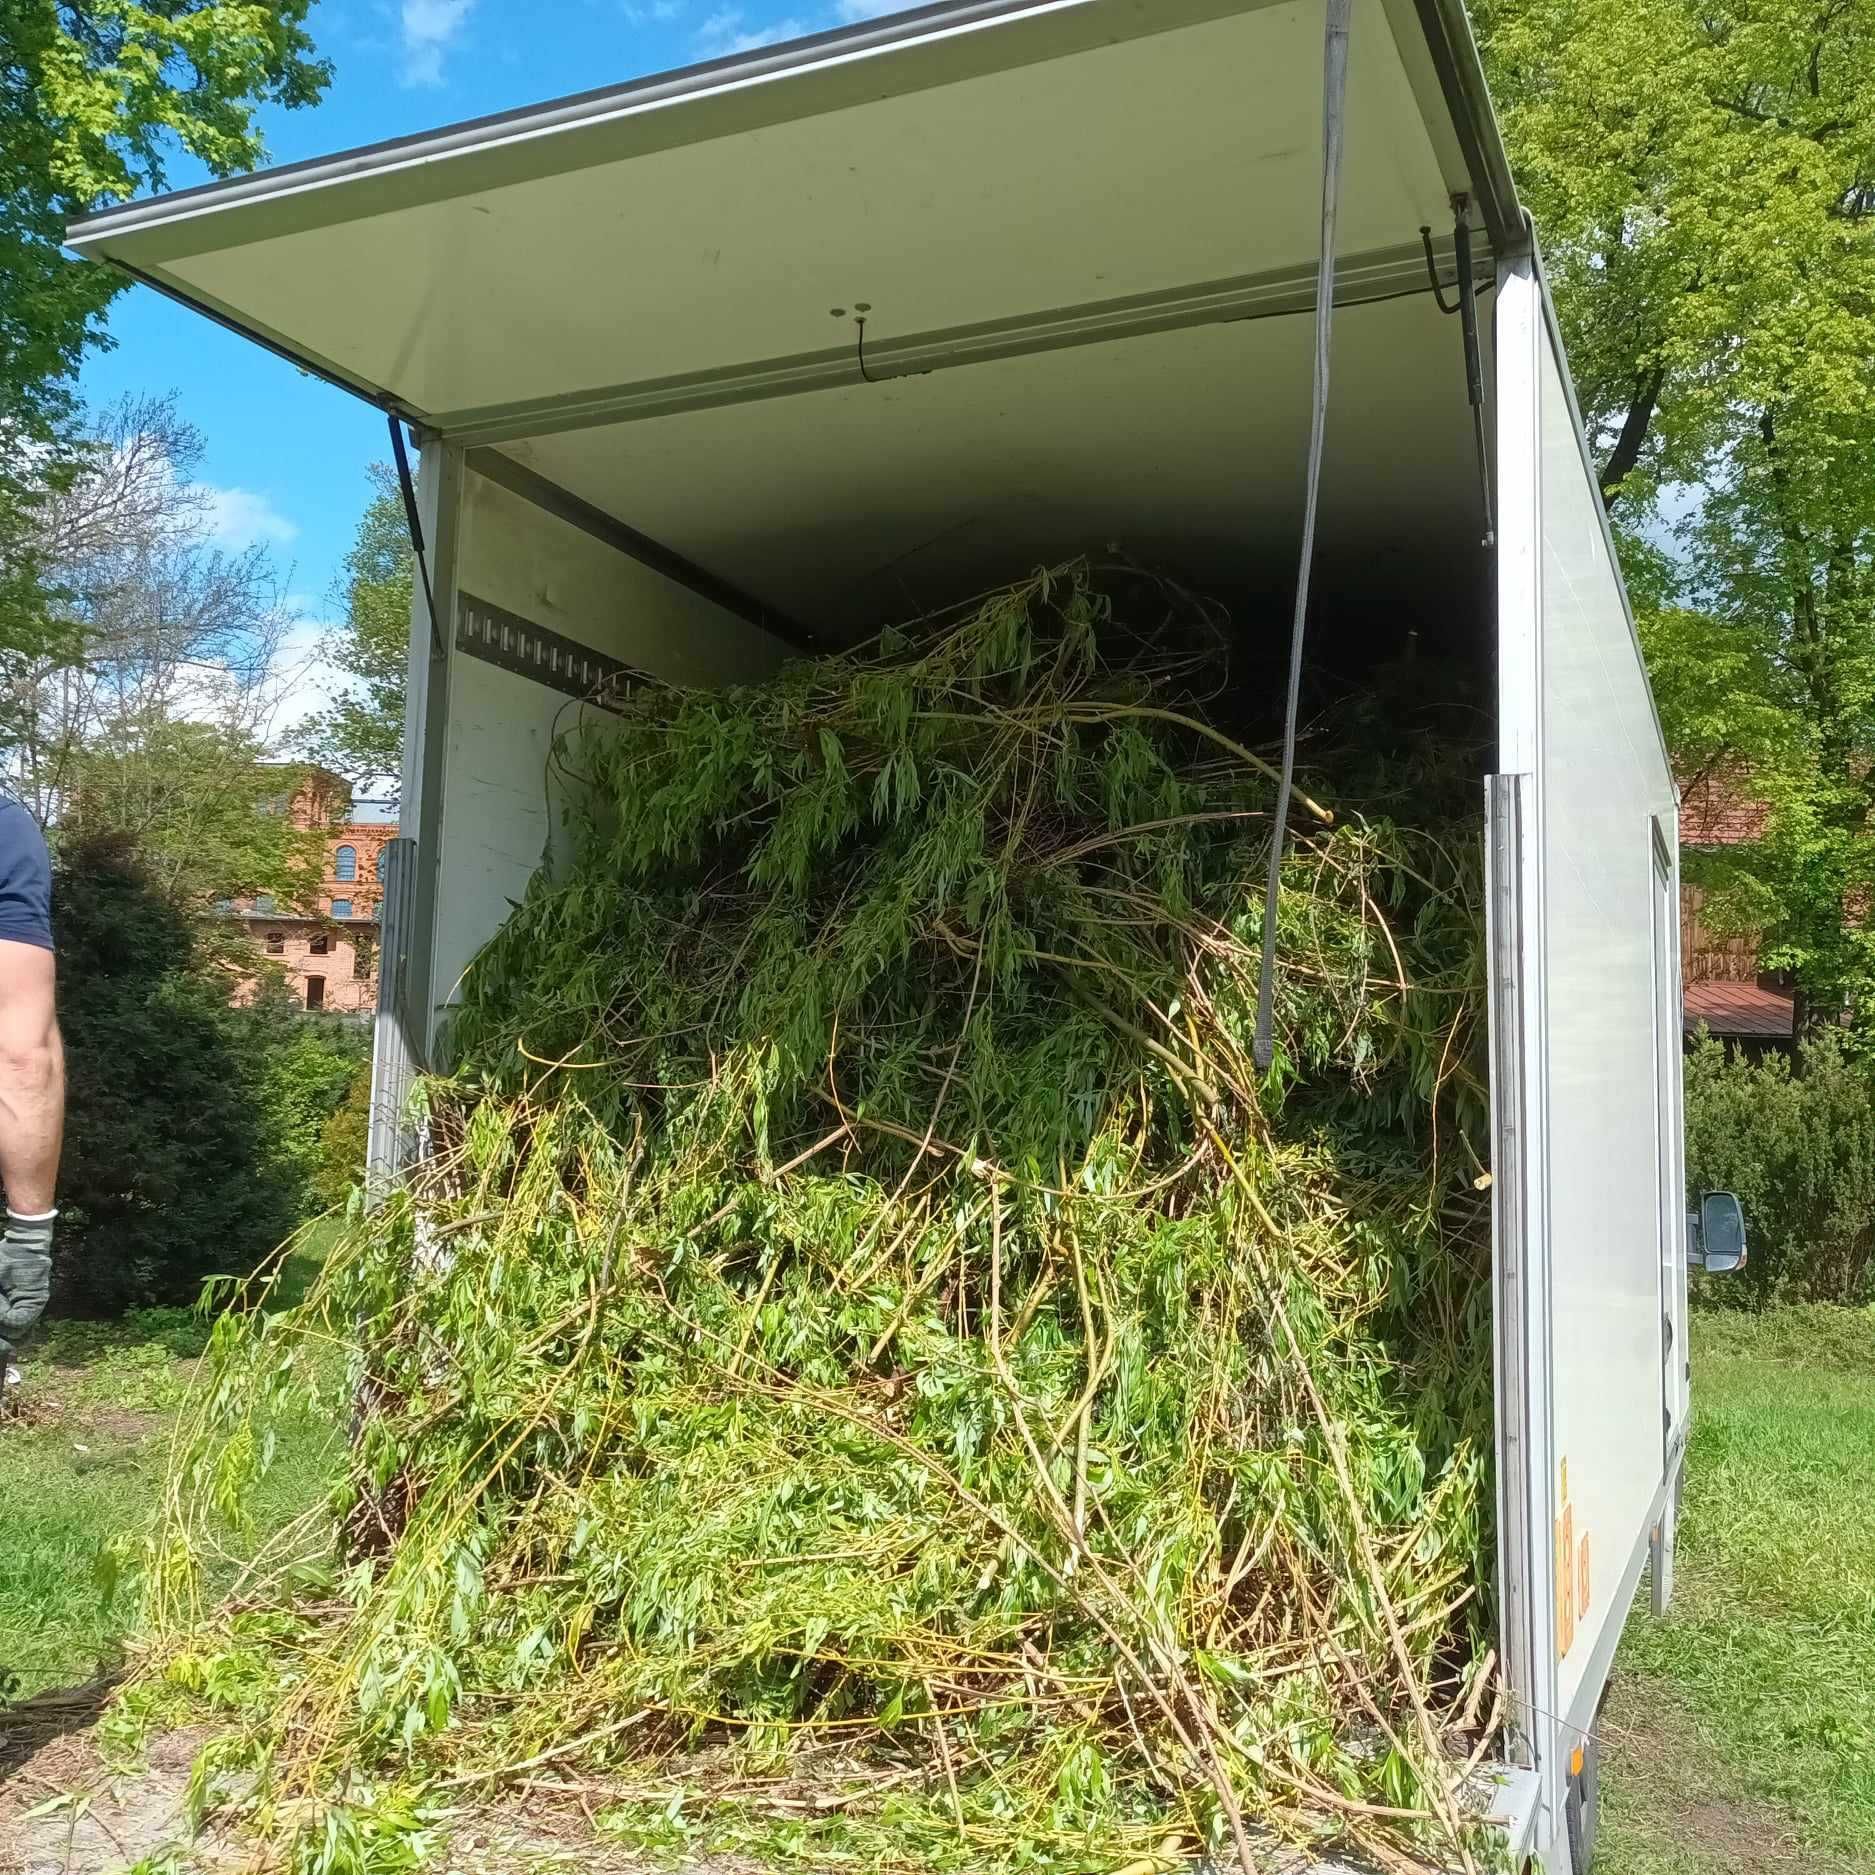 Wywóz gałęzi odpadów zielonych liści  trawy  Łódź okolice